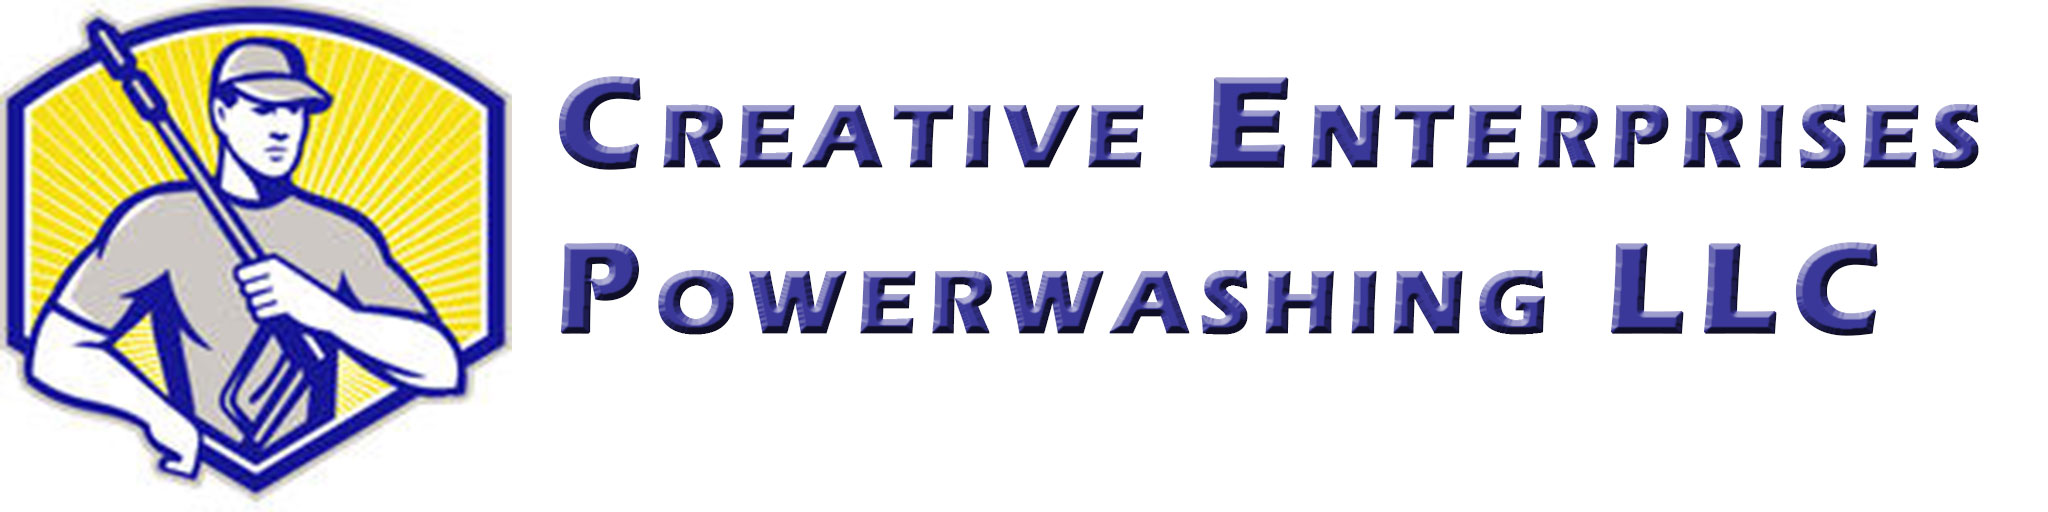 CREATIVE ENTERPRISE POWERWASHING, LLC